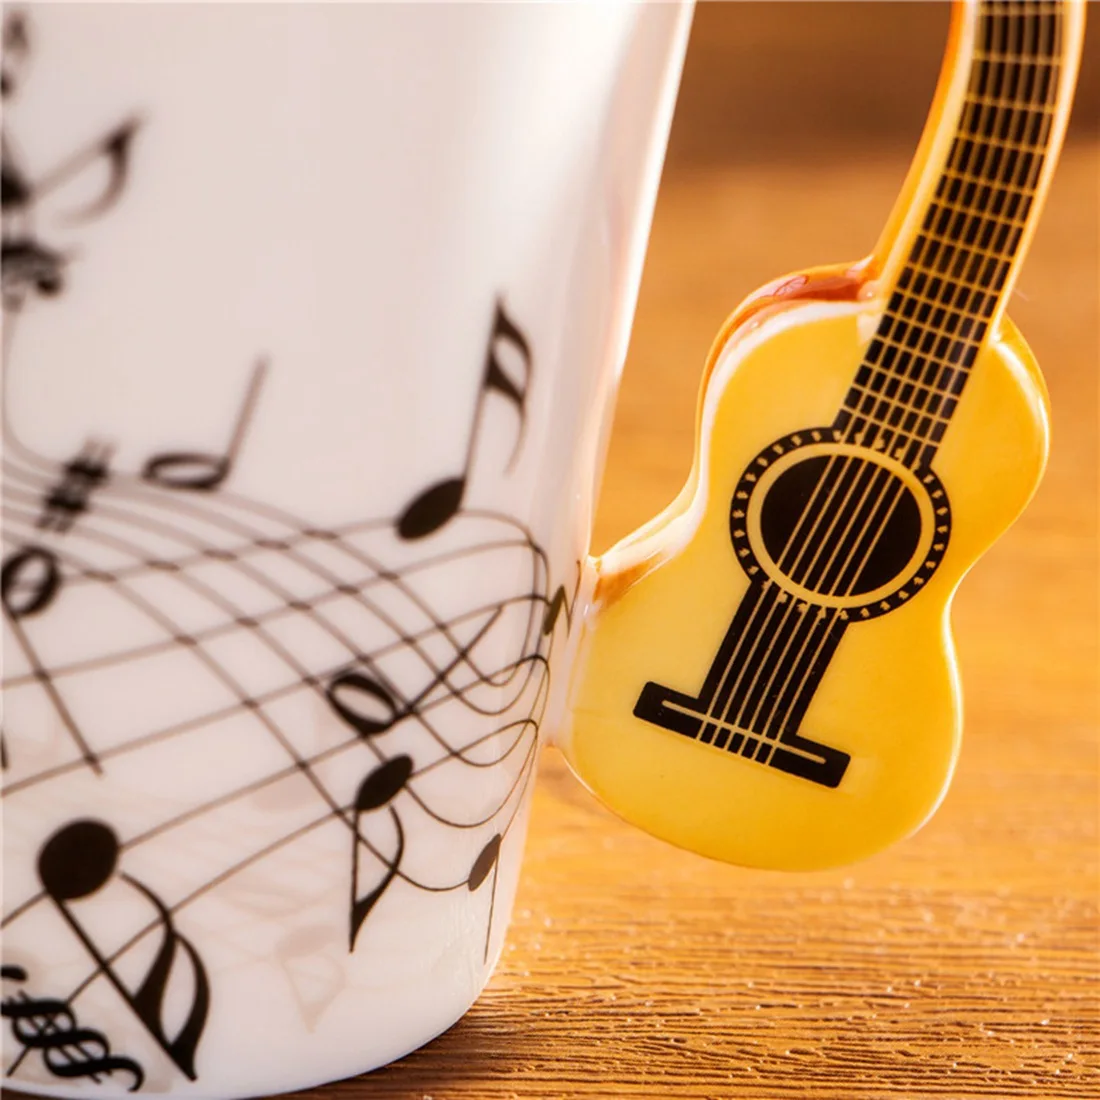 Креативная Новинка гитара ручка керамическая чашка Бесплатный спектр Кофе Молоко чай чашка личность кружка уникальный музыкальный инструмент подарок cu